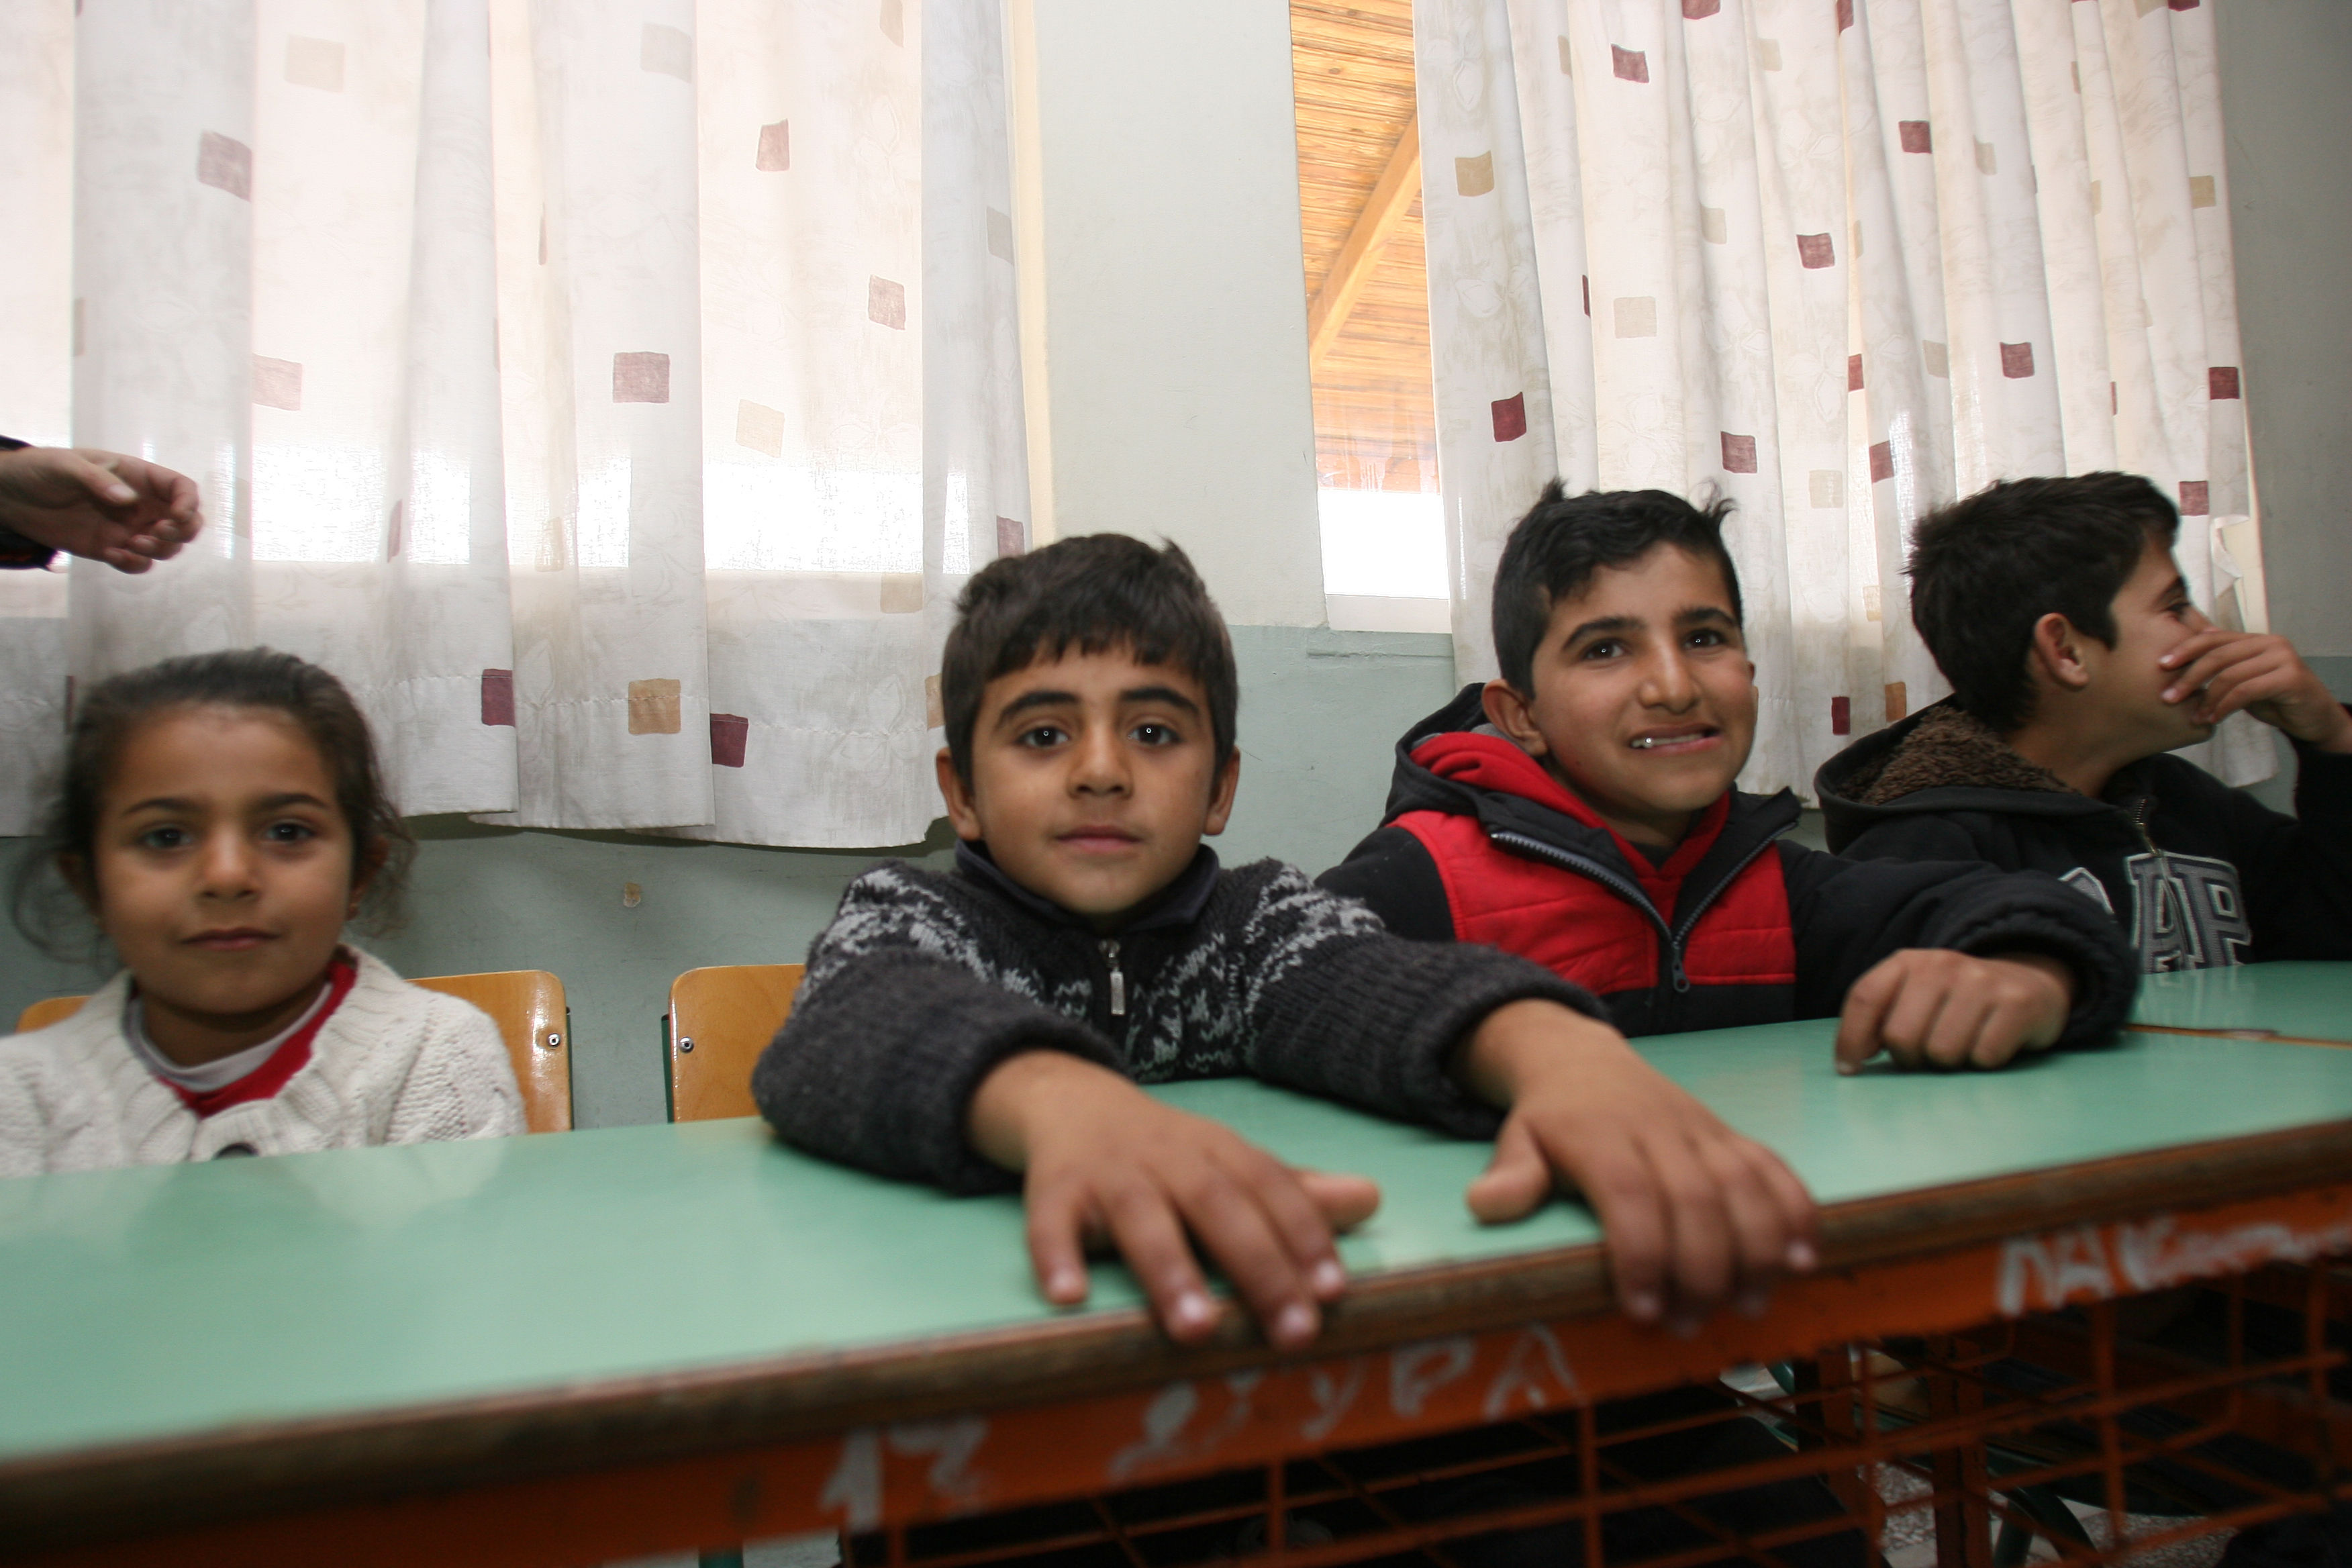 Παιδεία χωρίς σύνορα: 160 προσφυγόπουλα σε ελληνικά σχολεία